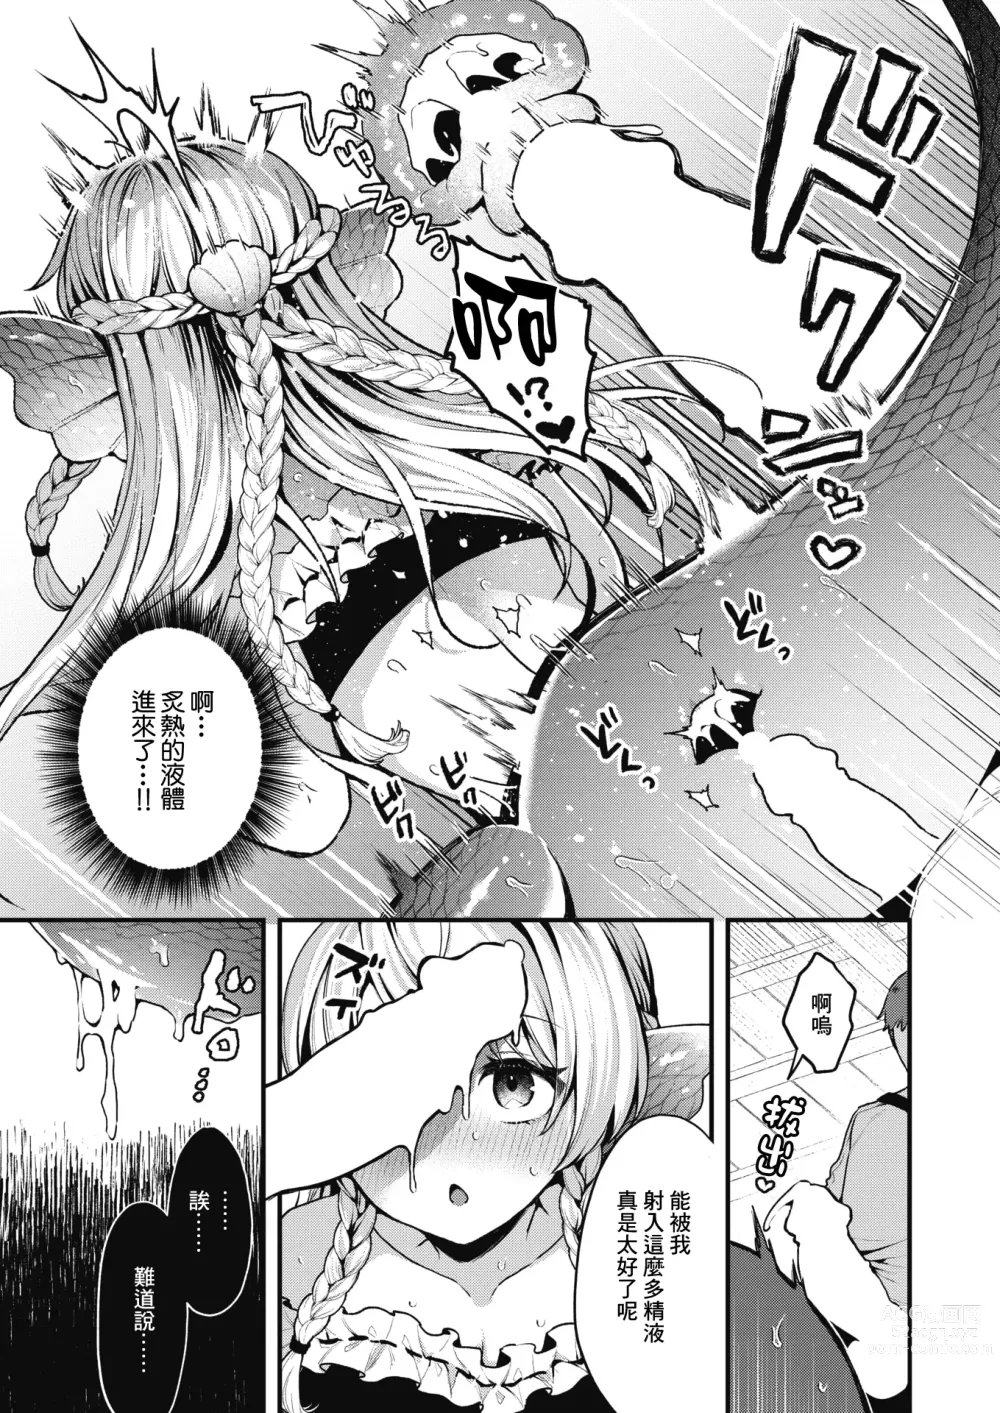 Page 18 of manga 雖然這裡沒有王子大人